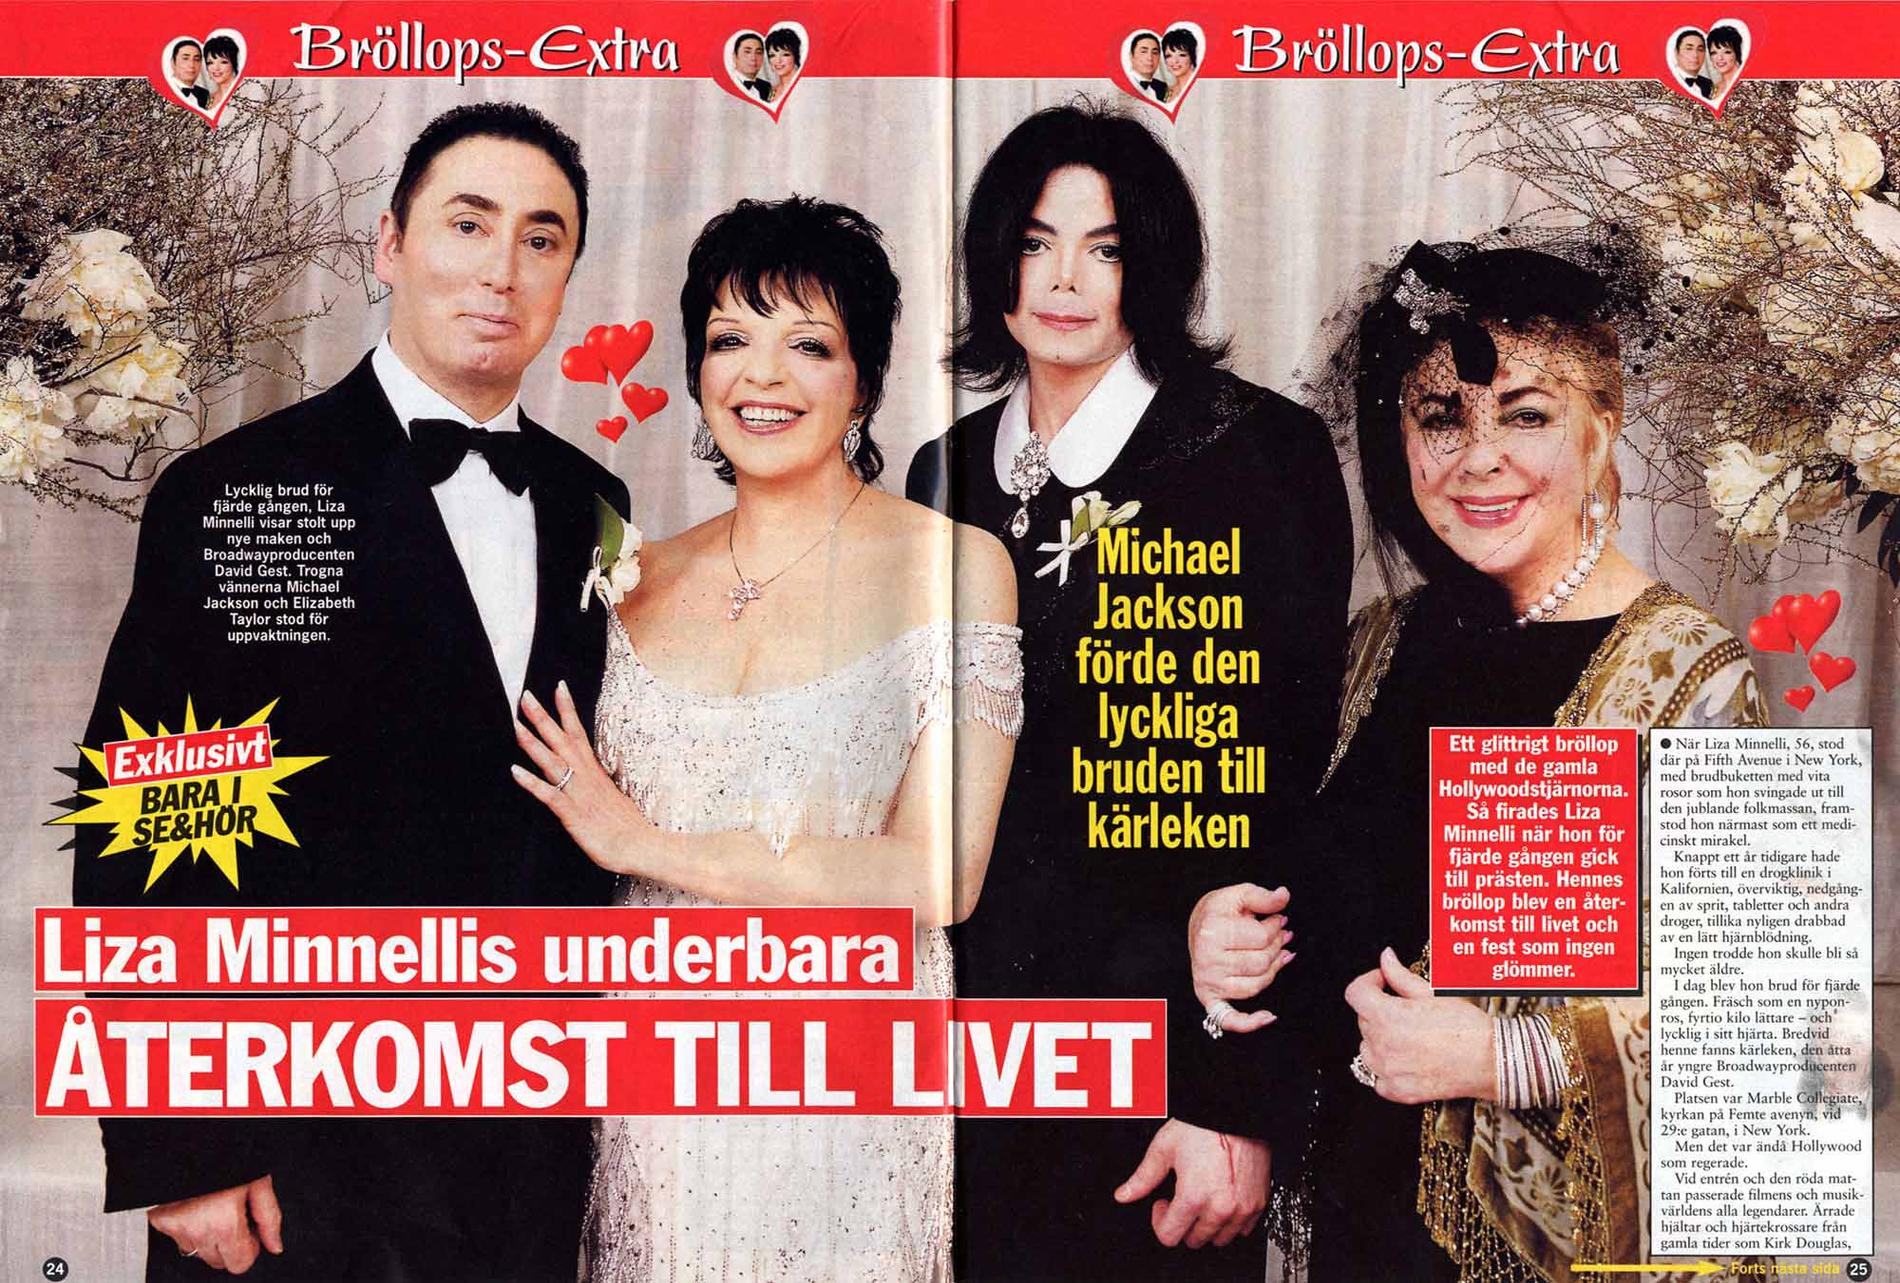 David Gest och Liza Minnelli var gifta 2002-2007. I tidningen ”Se och hör” poserade de nygifta med gästerna Michael jackson och Elizabeth Taylor.